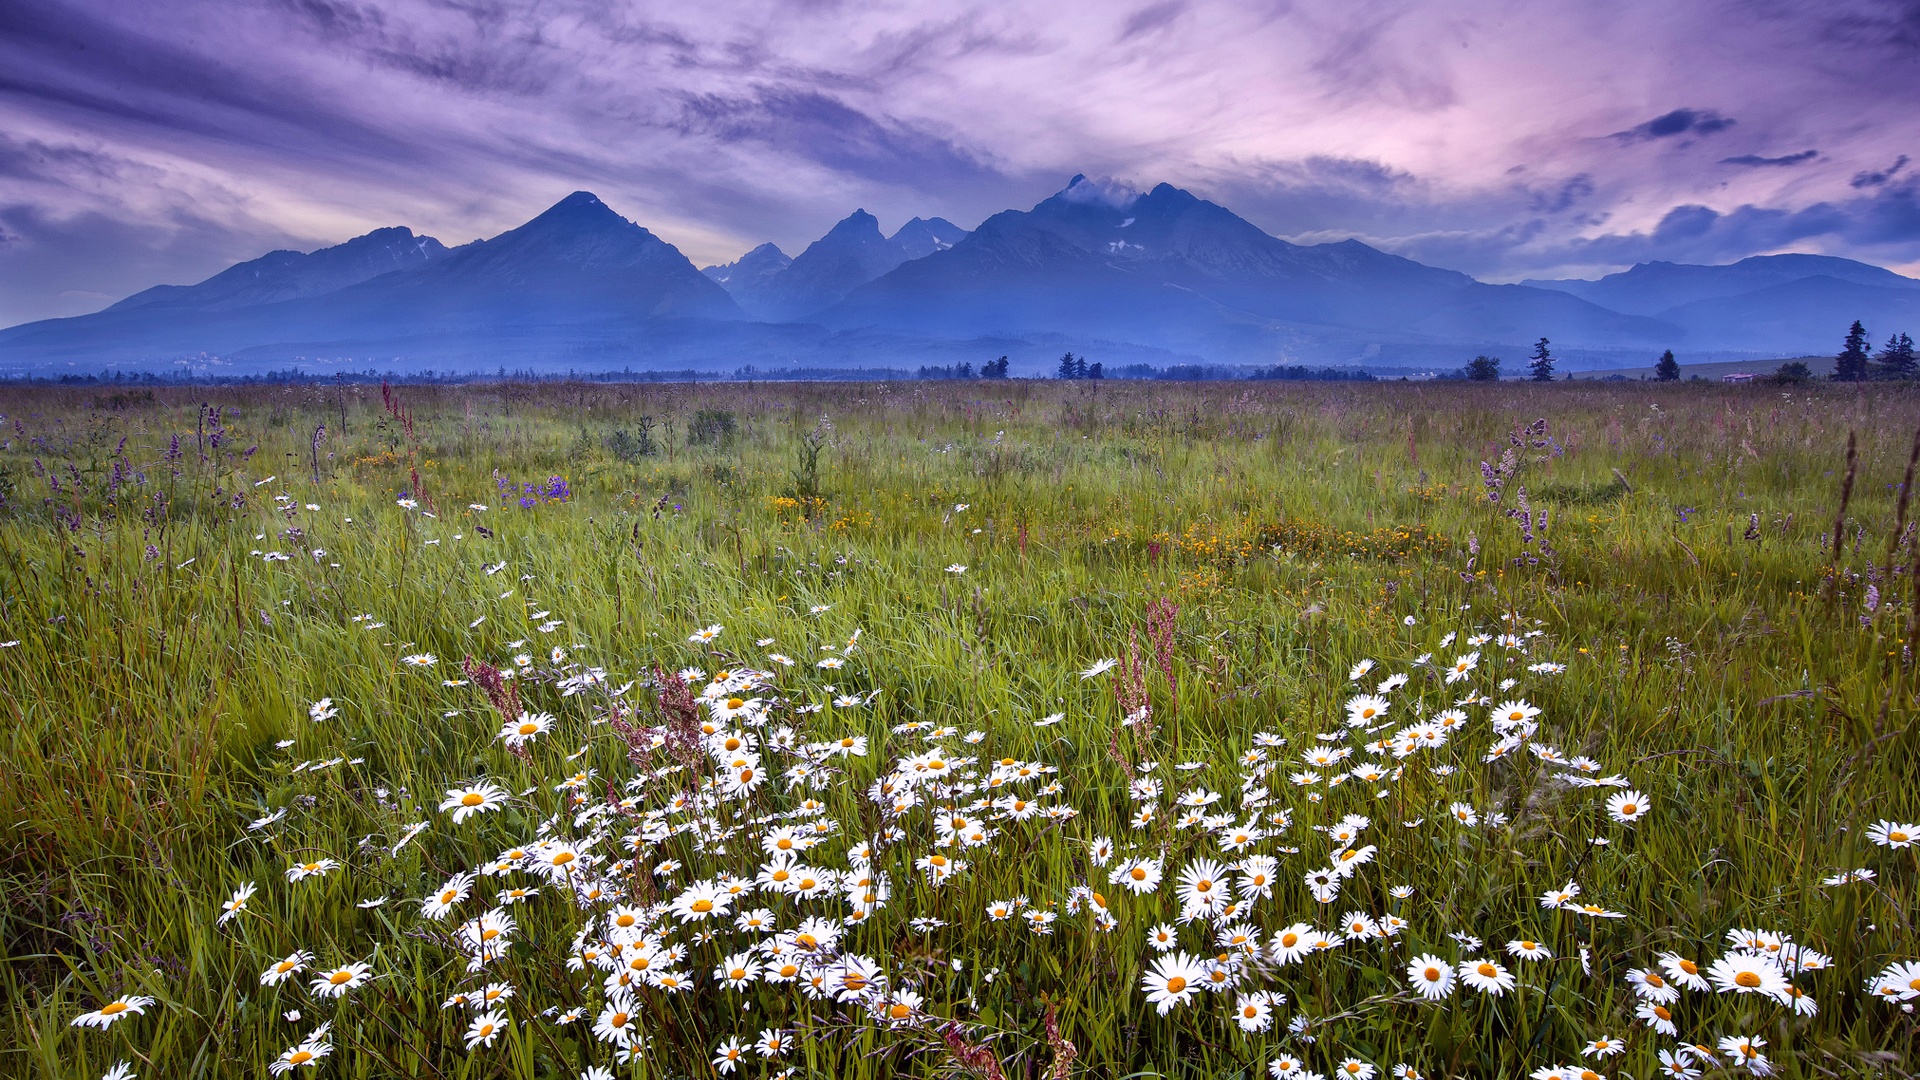 Slovakia Tatra Mountains Grass Flowers Wallpaper Widescreen